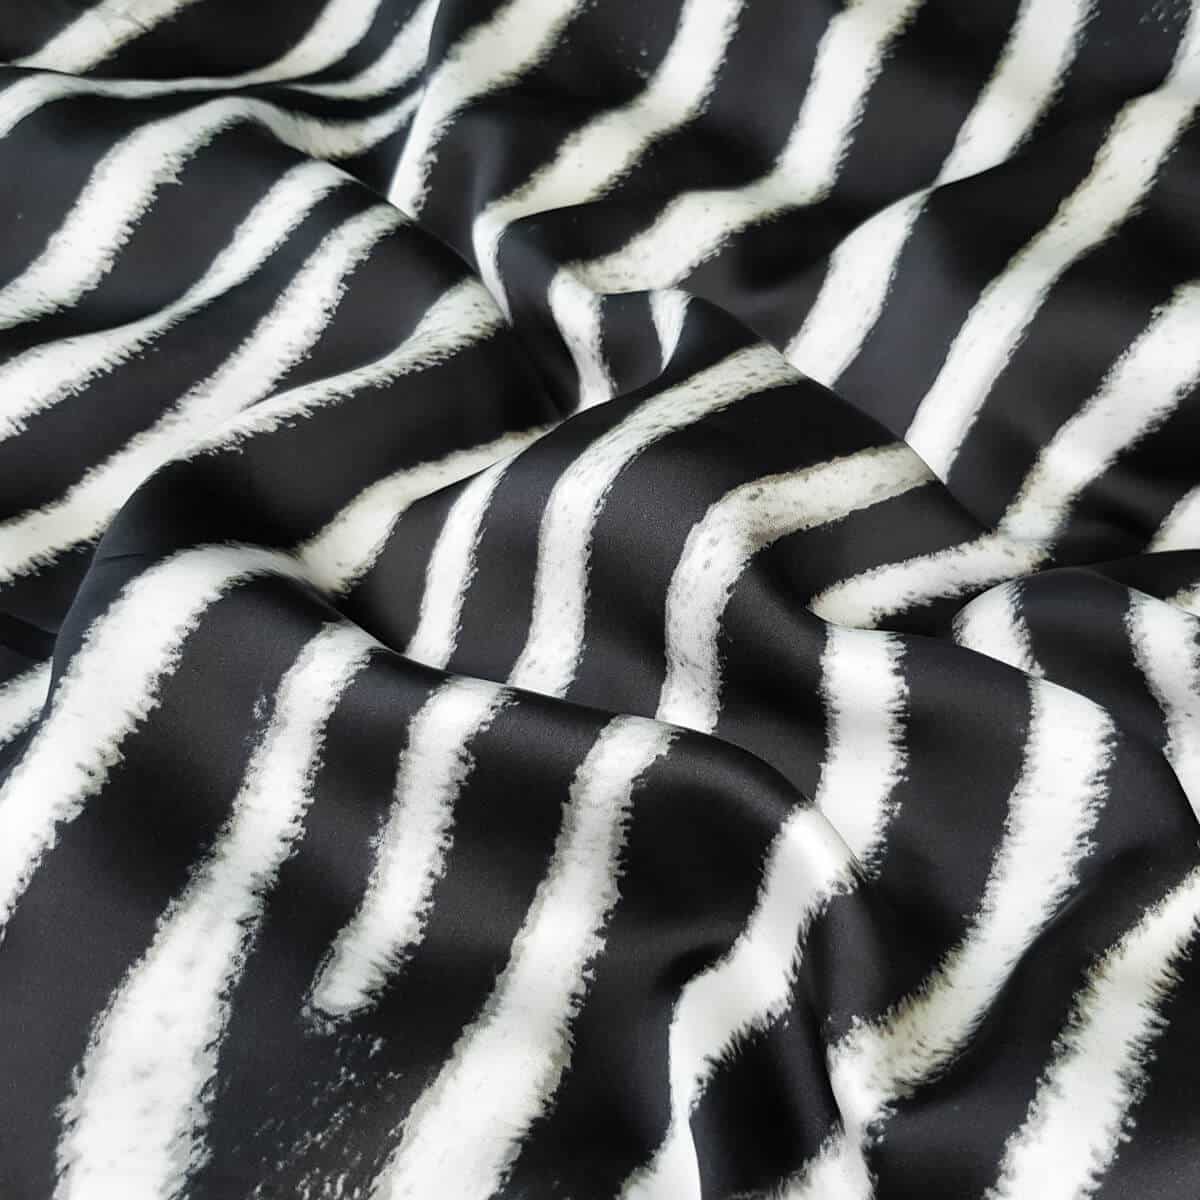 czysty jedwab czarno bialy material zebra polmatA